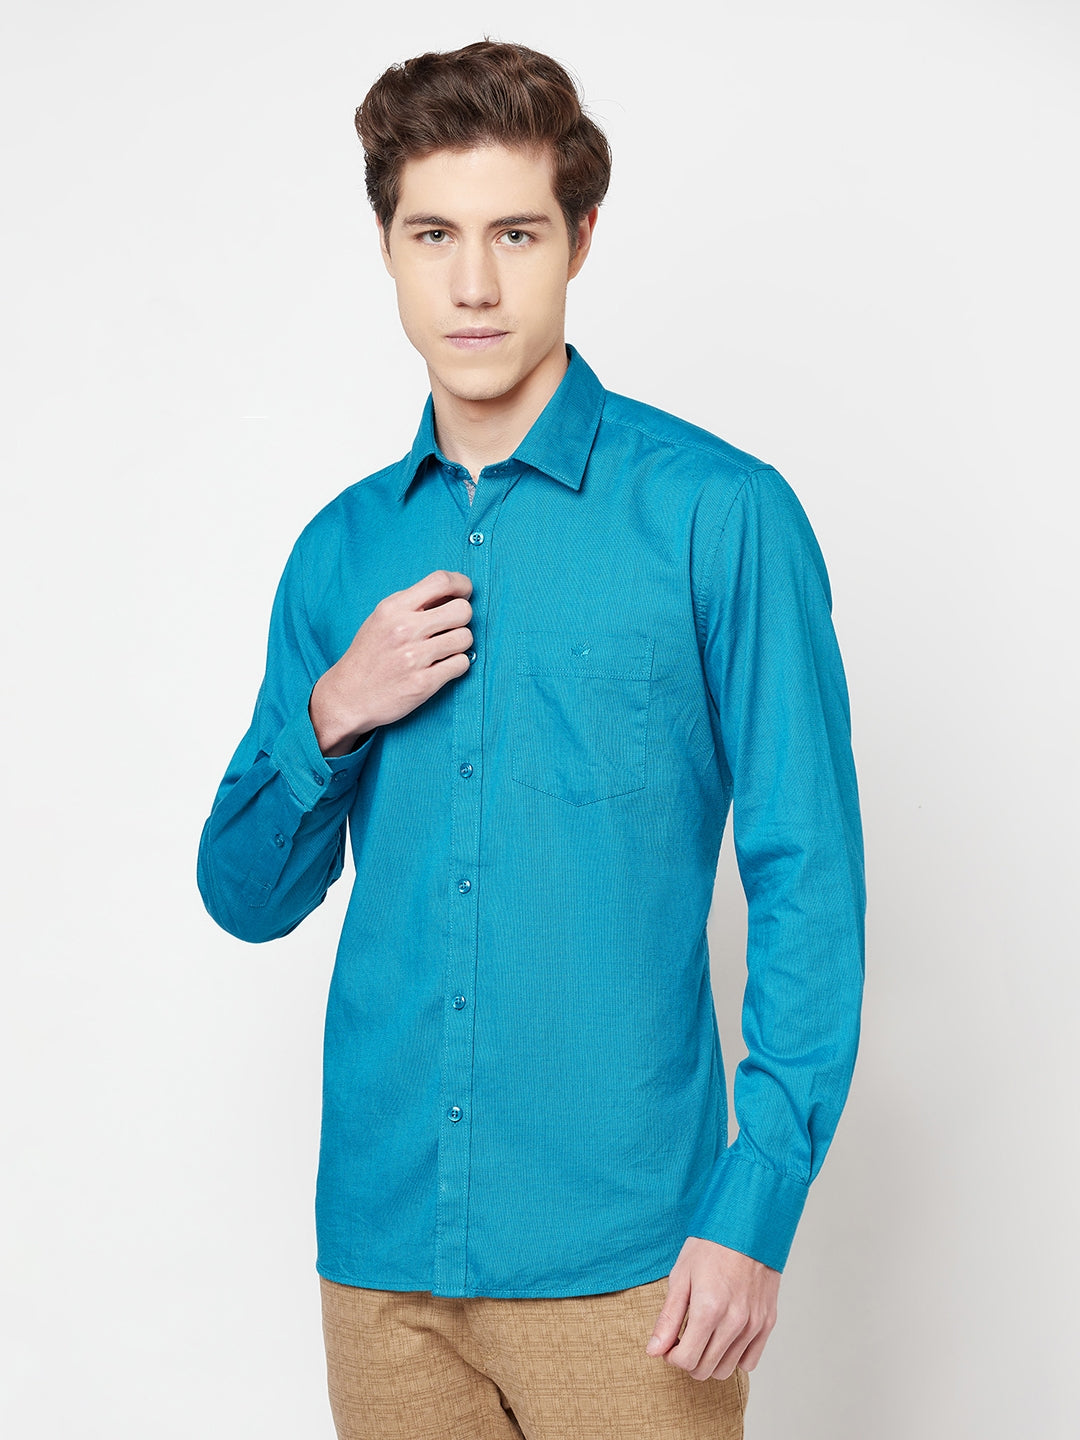 Blue Casual Shirt - Men Shirts